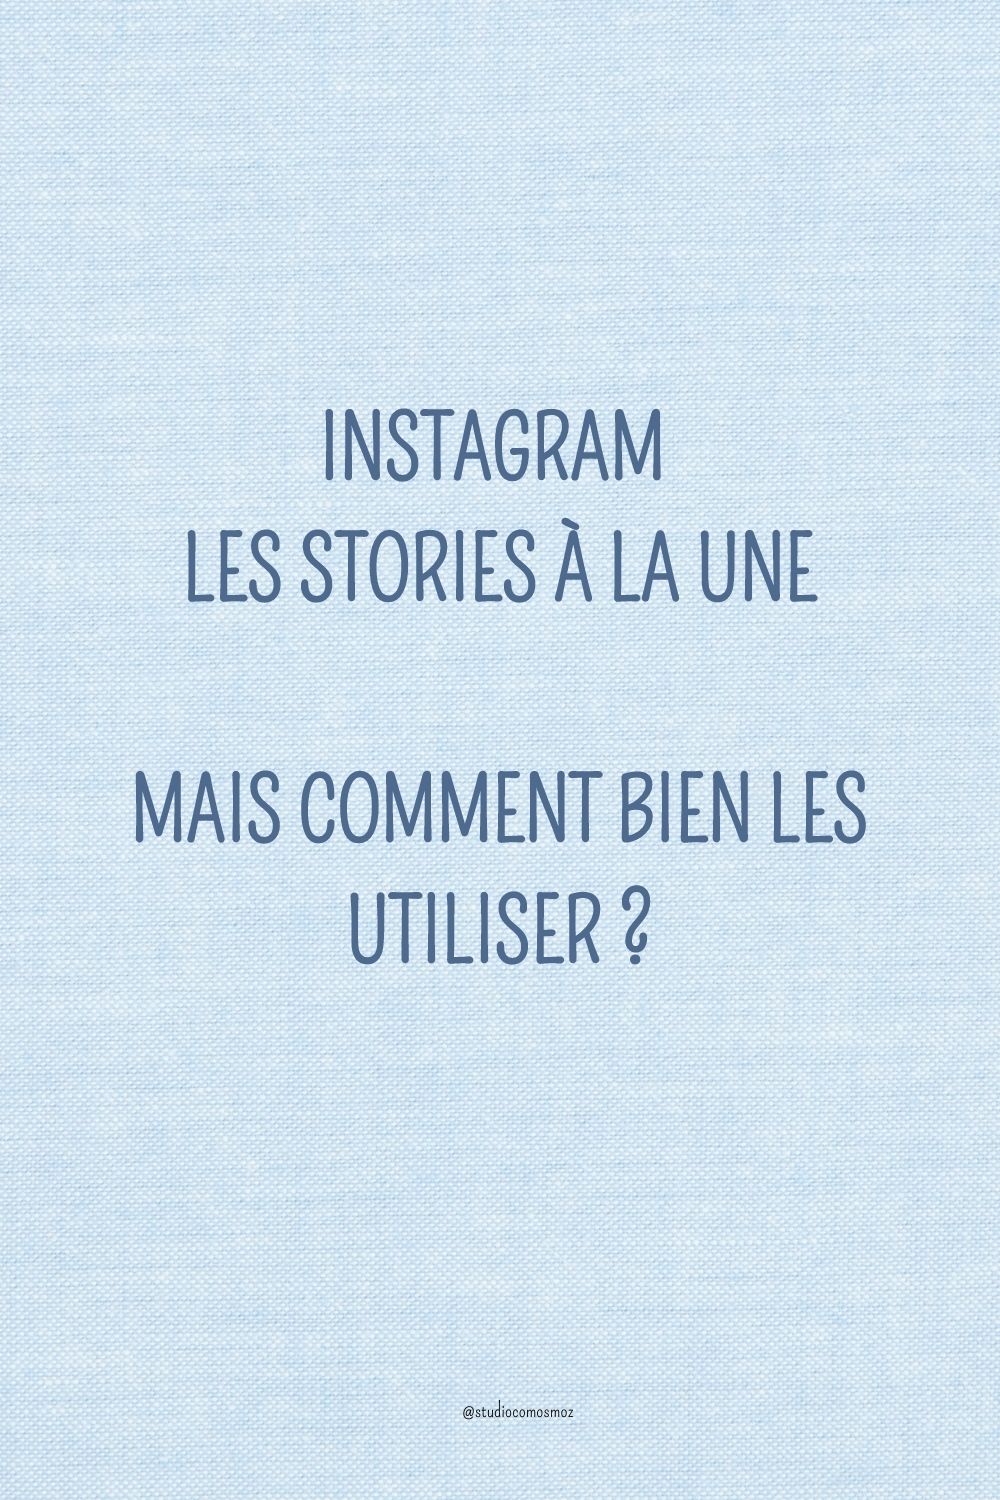 Instagram stories à la une